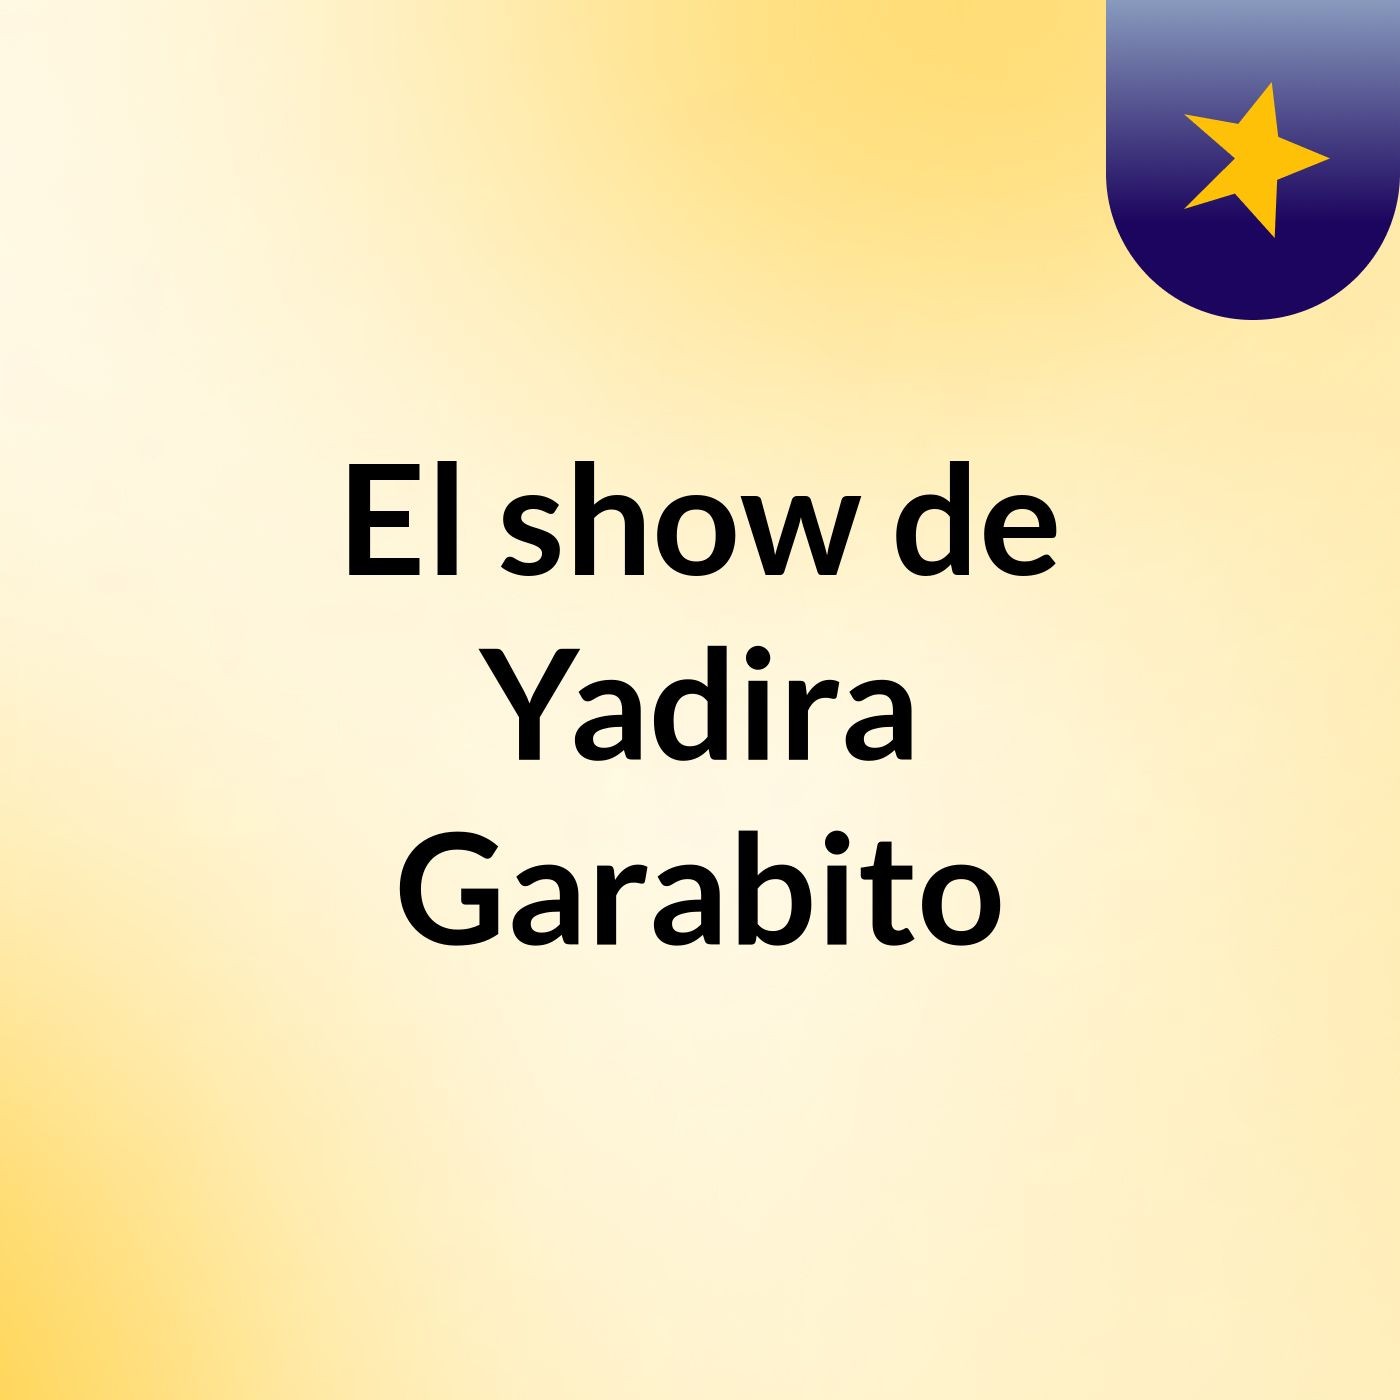 El show de Yadira Garabito